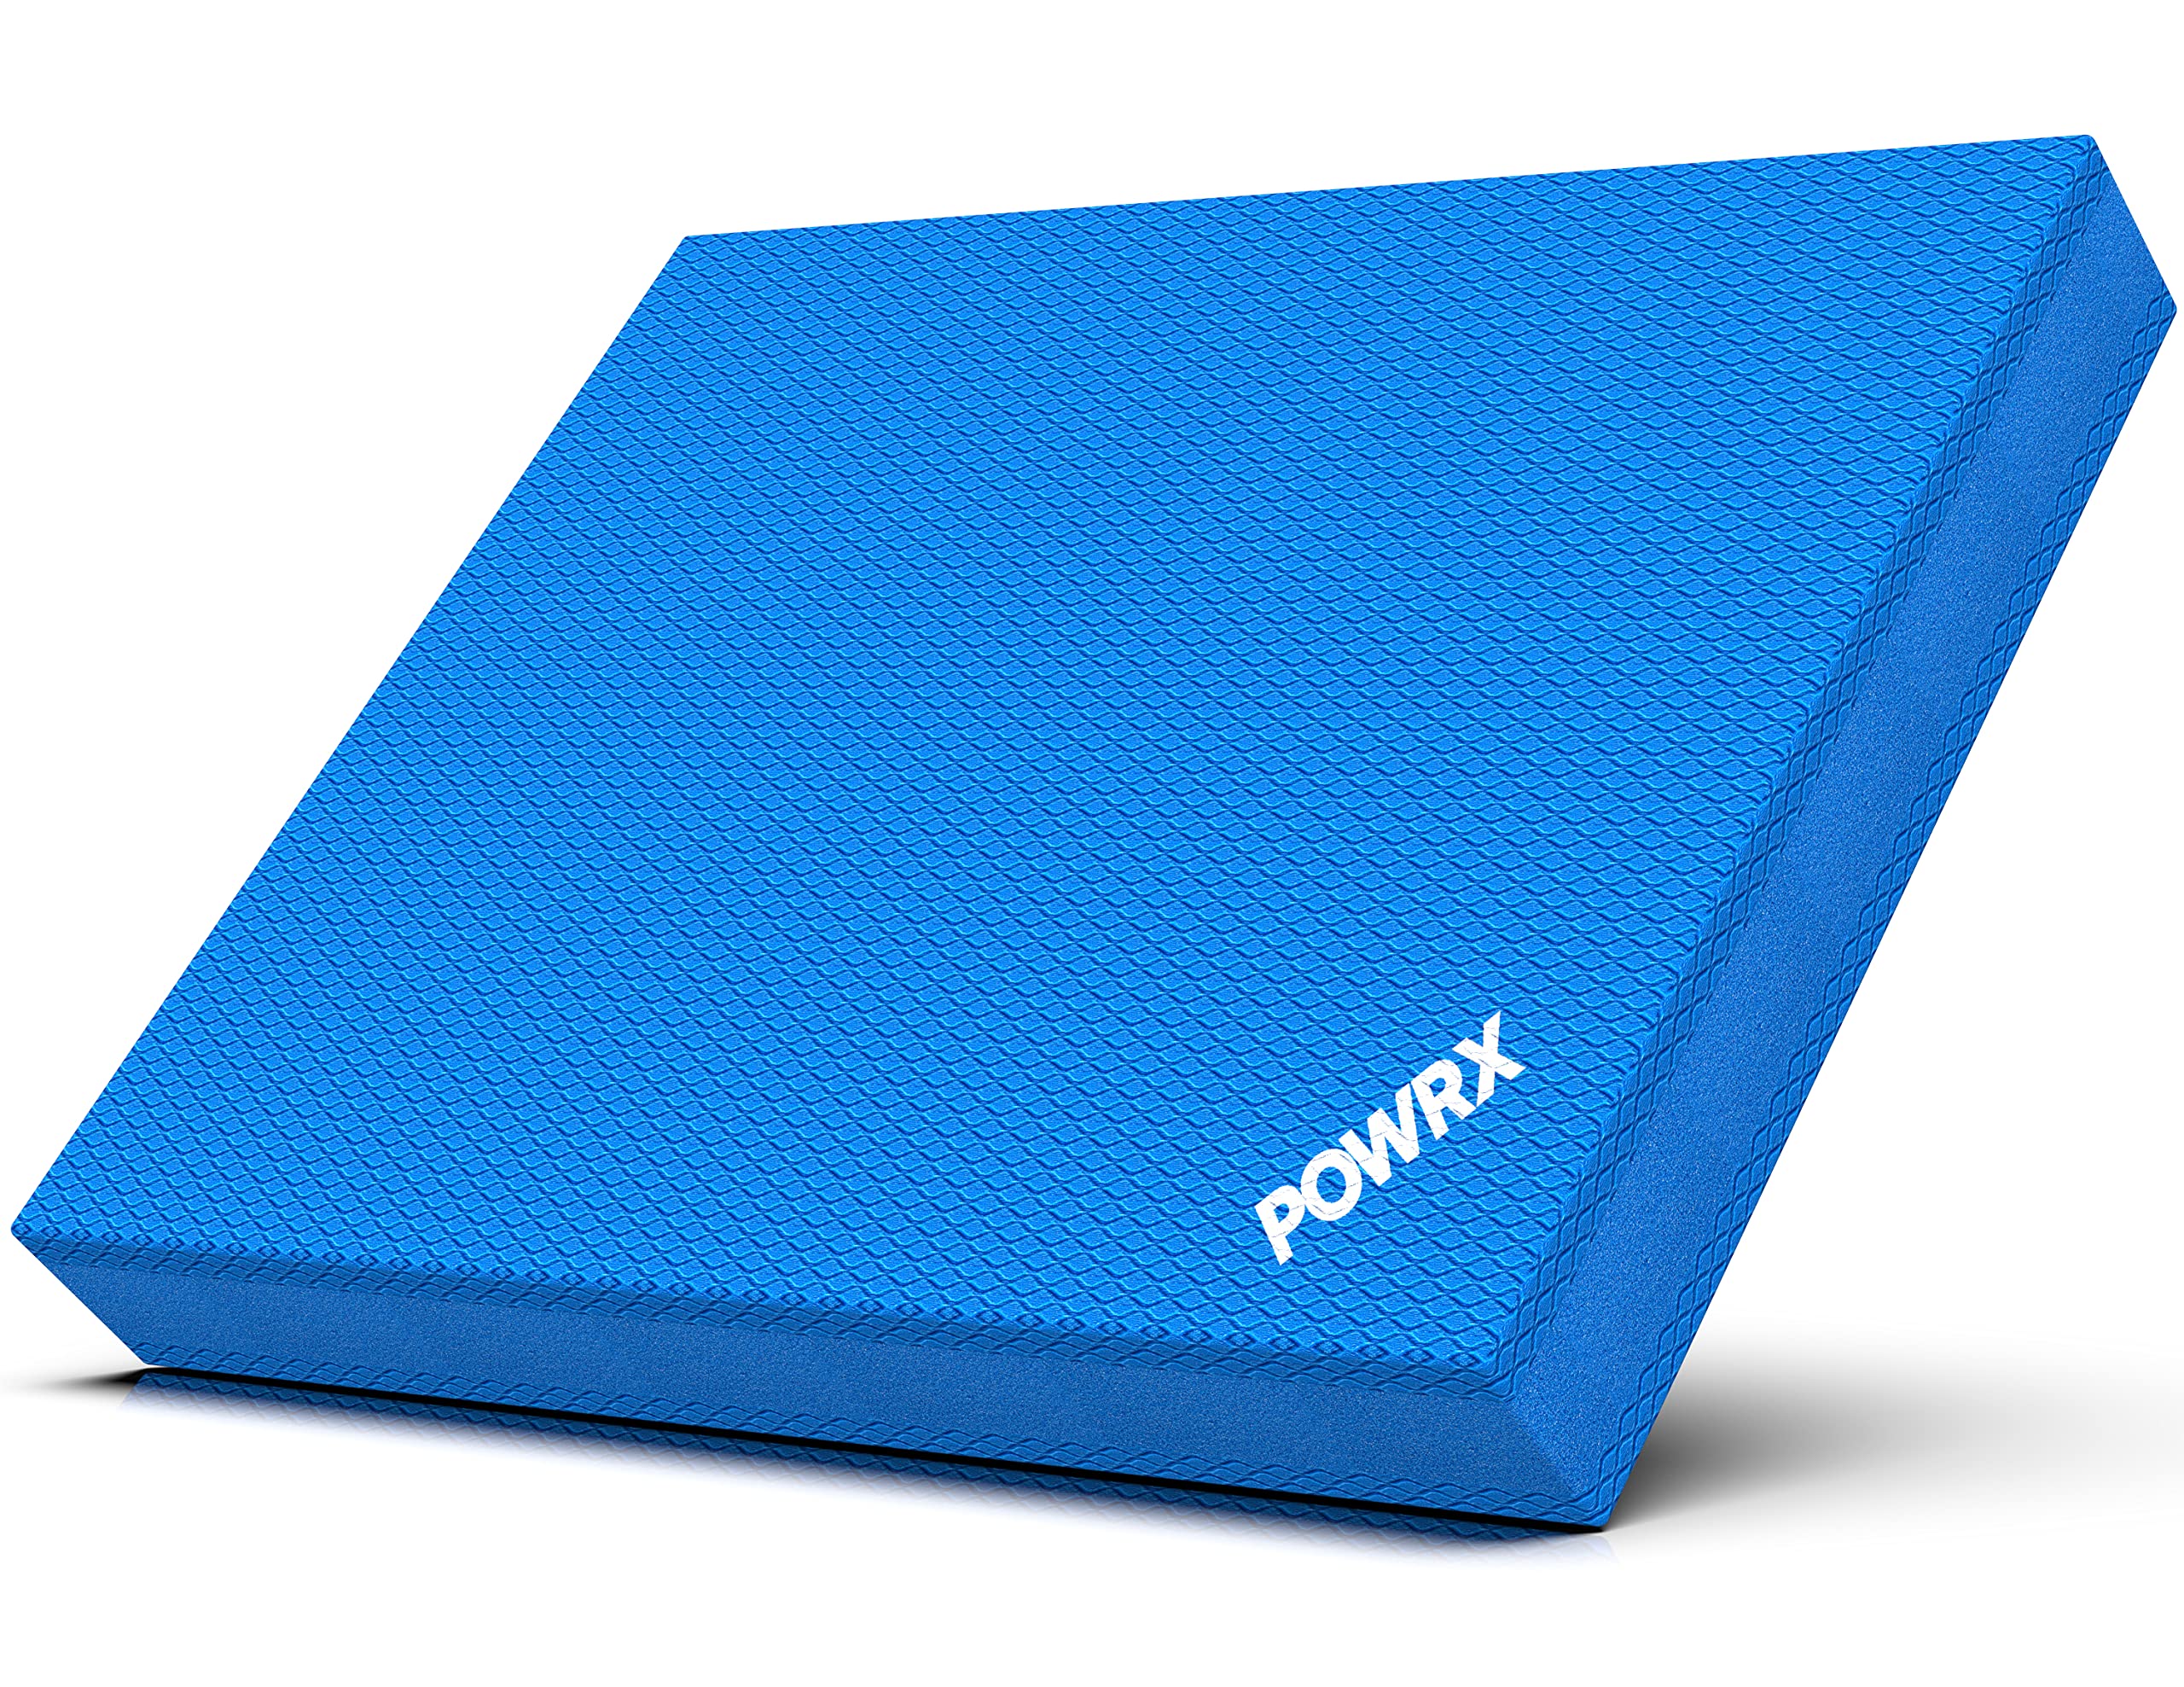 送料無料POWRX Foam Balance Pad for Stability Training Yoga and Physical Therapy Non-Slip Foam Pads for Exercise 18.9